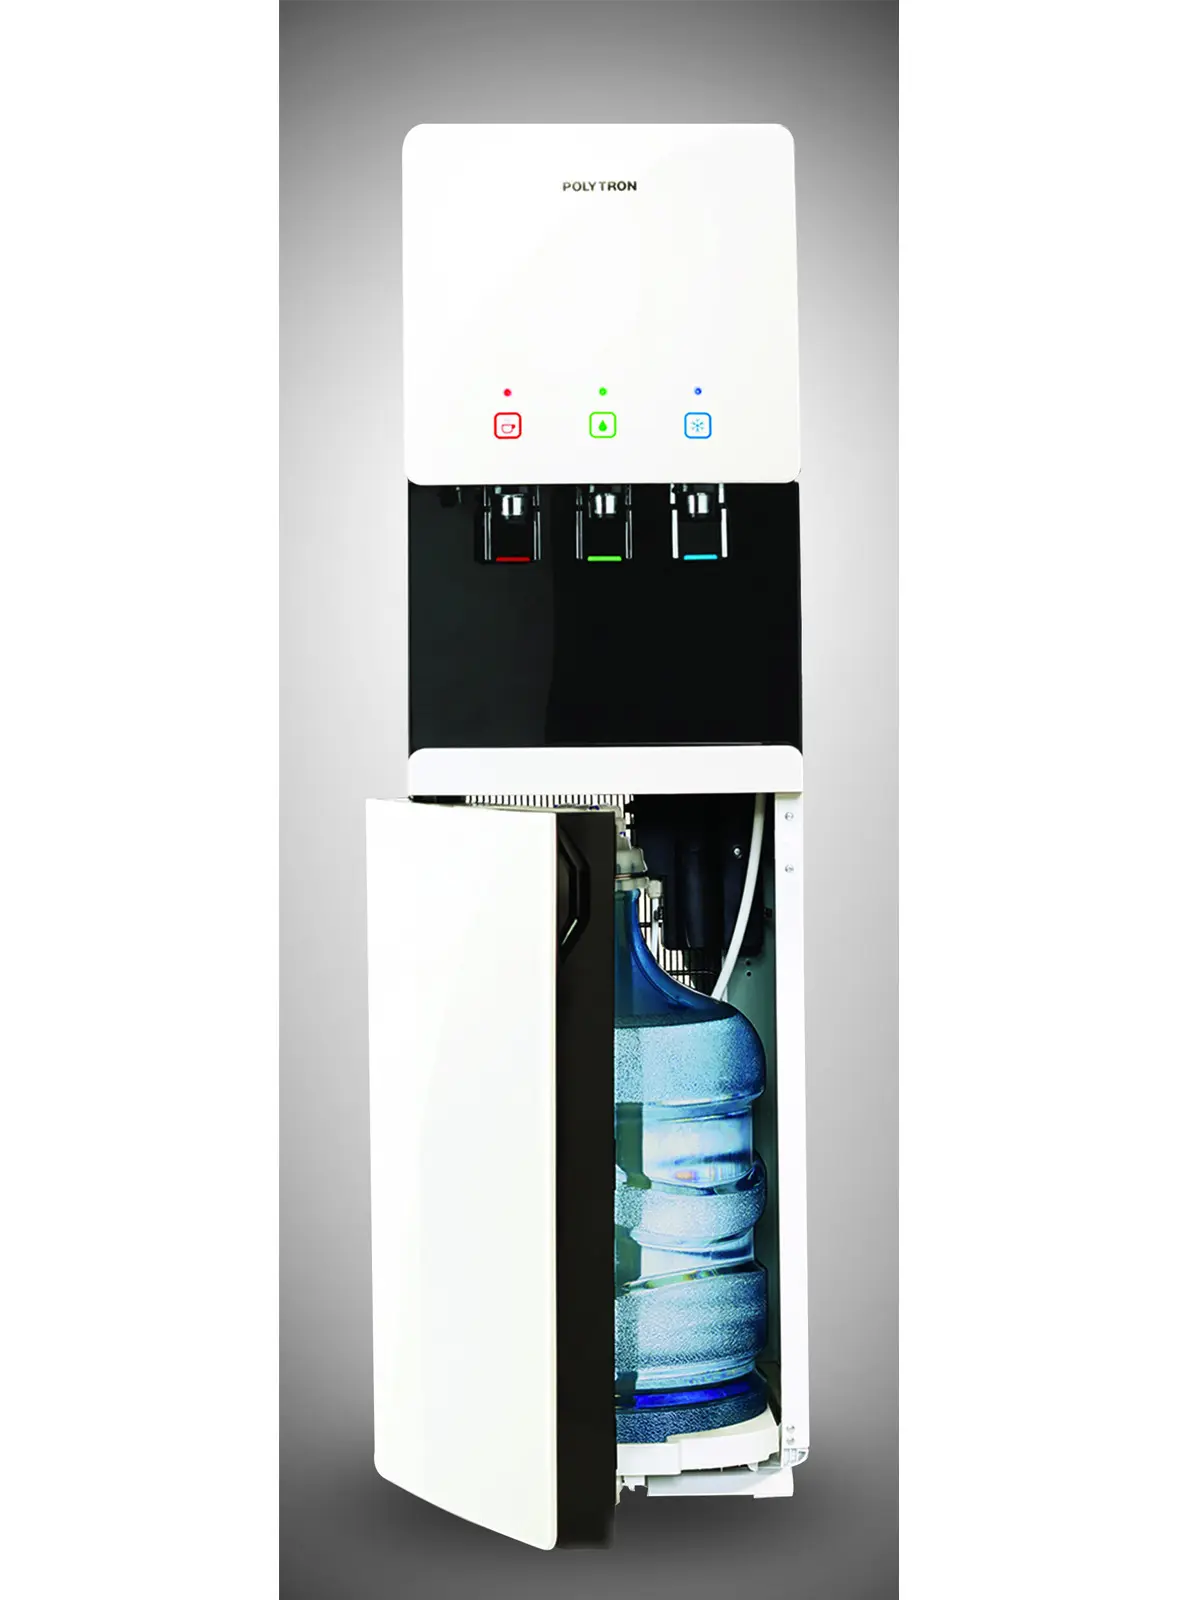 Penempatan Dispenser Harus Tepat agar Kita Mudah Mengakses saat Membutuhkan Air